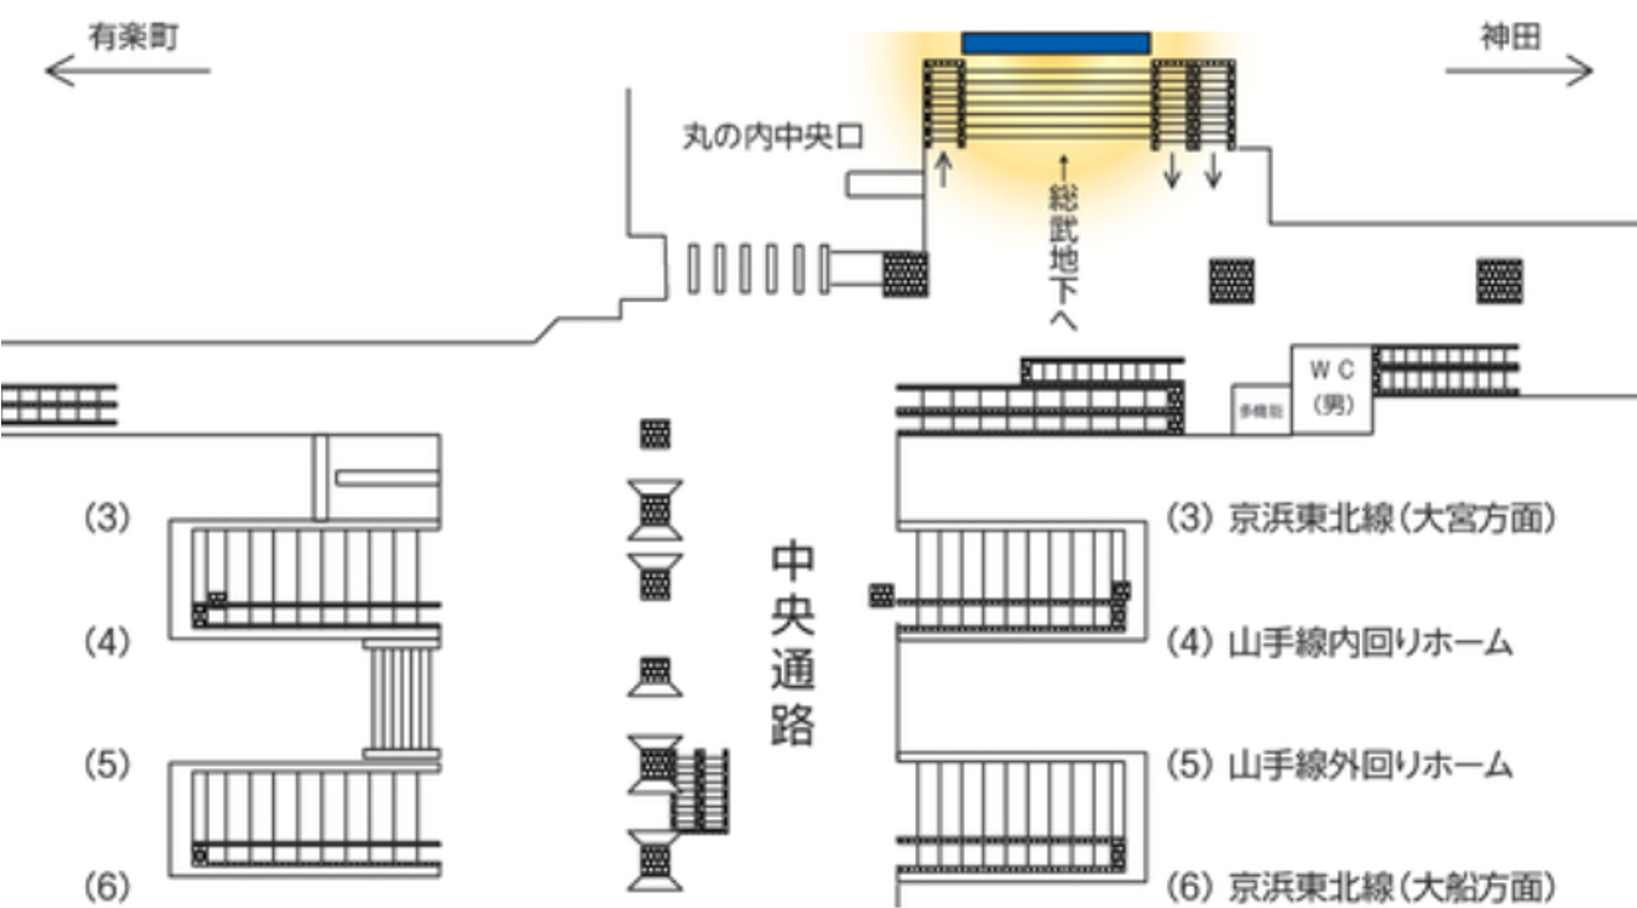 東京駅丸の内大型LEDビジョン配置図